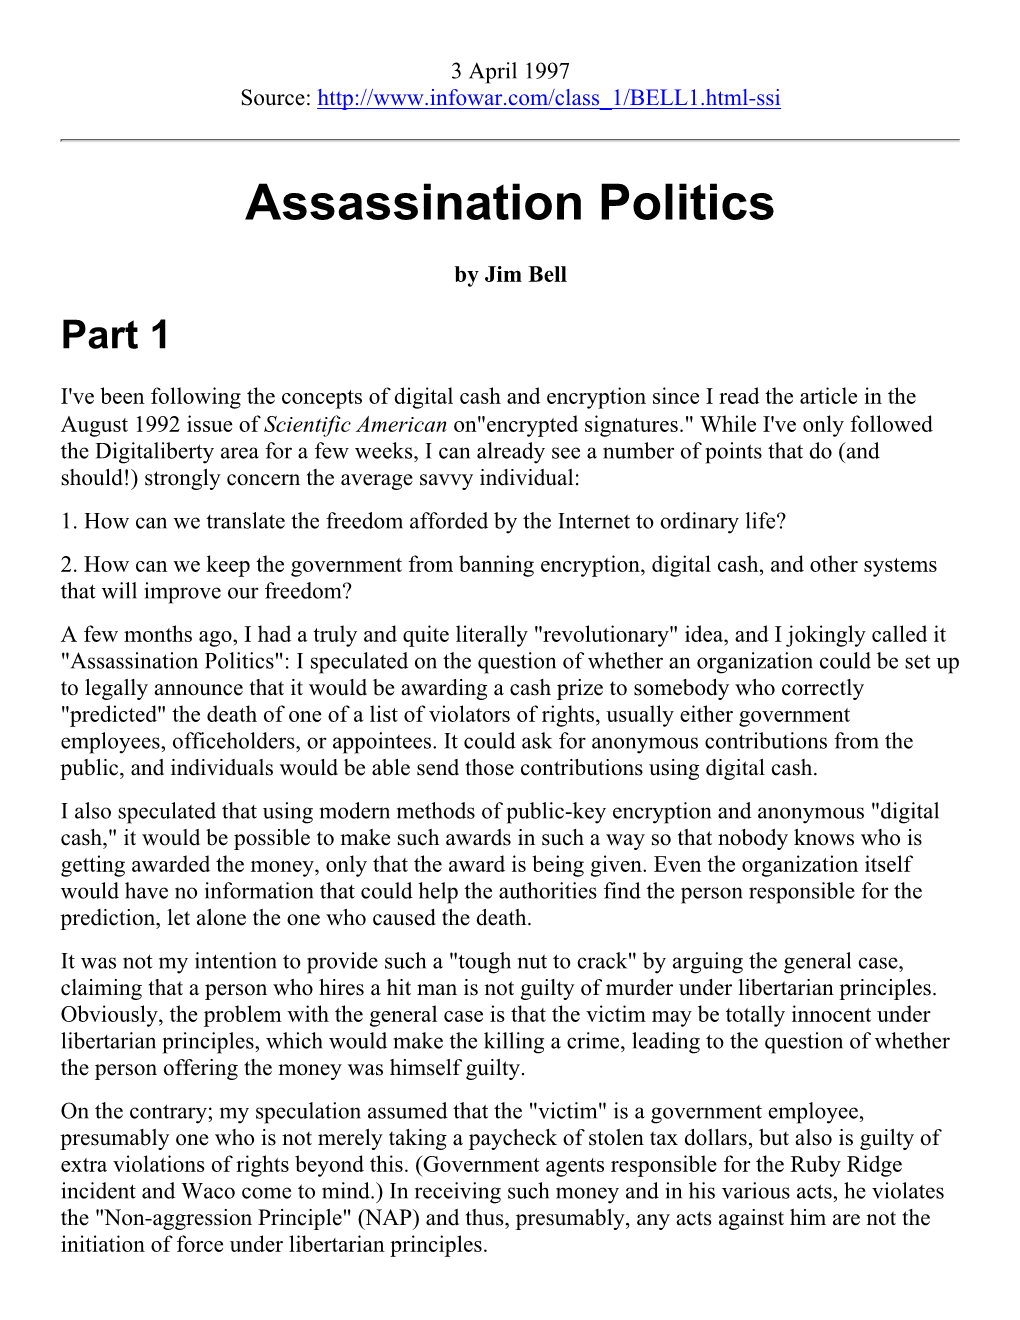 Assassination Politics